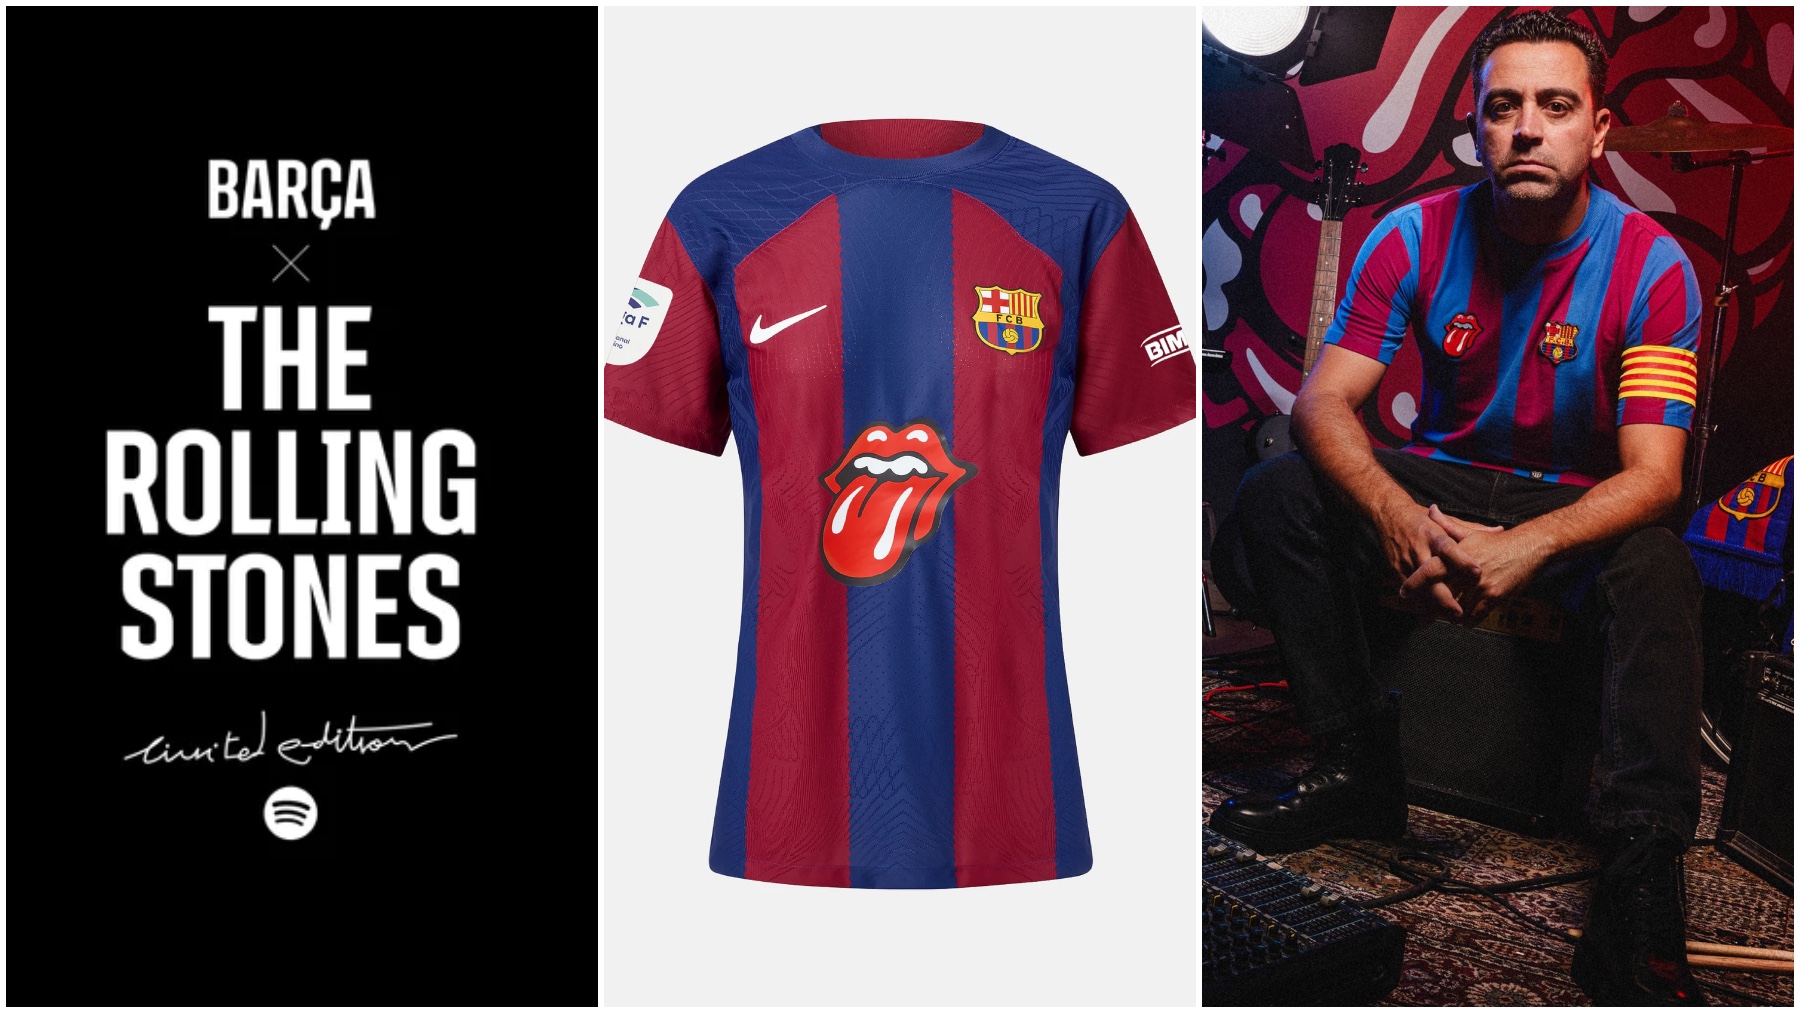 La equipación del Barcelona + Rolling Stones.